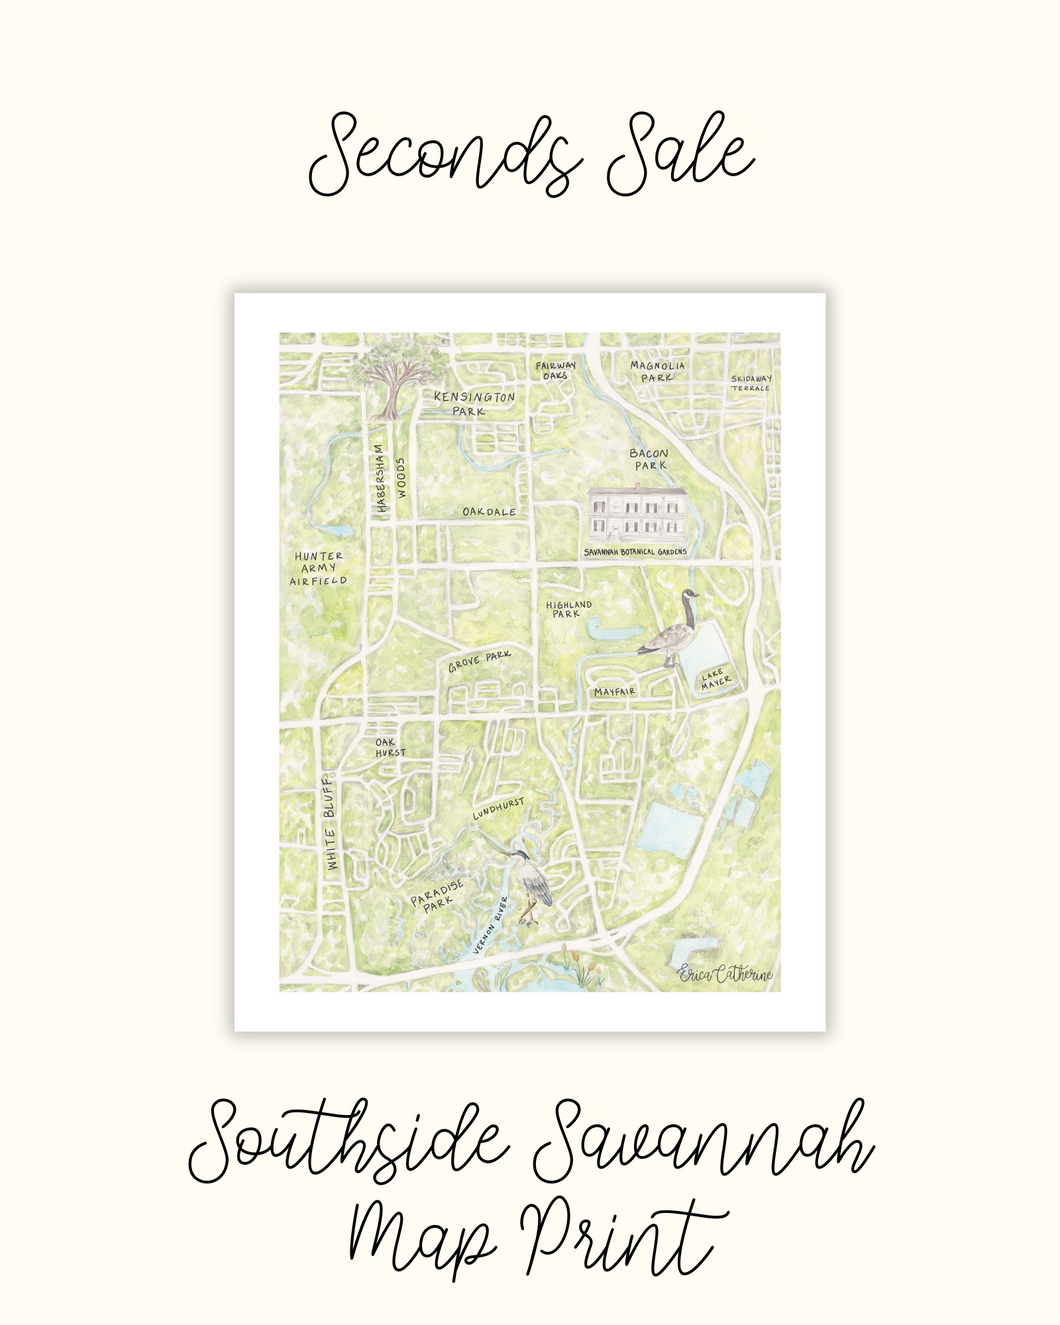 Southside Savannah Map Print - Seconds Sale